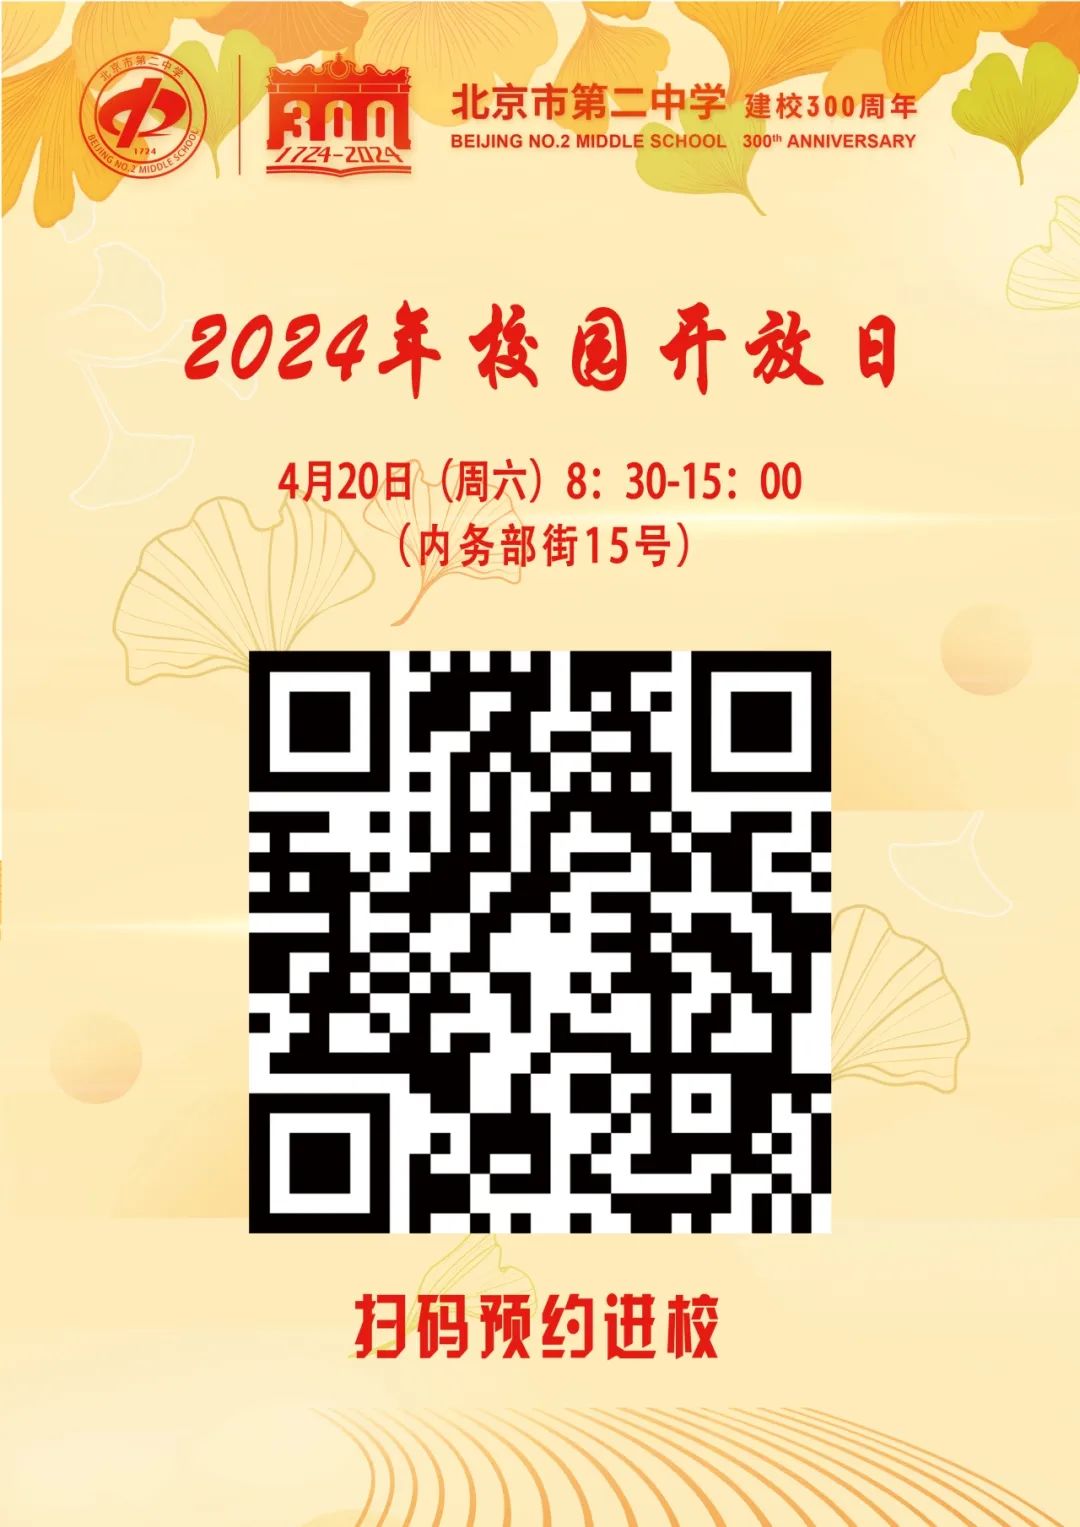 北京二中校园开放日二维码预约页面